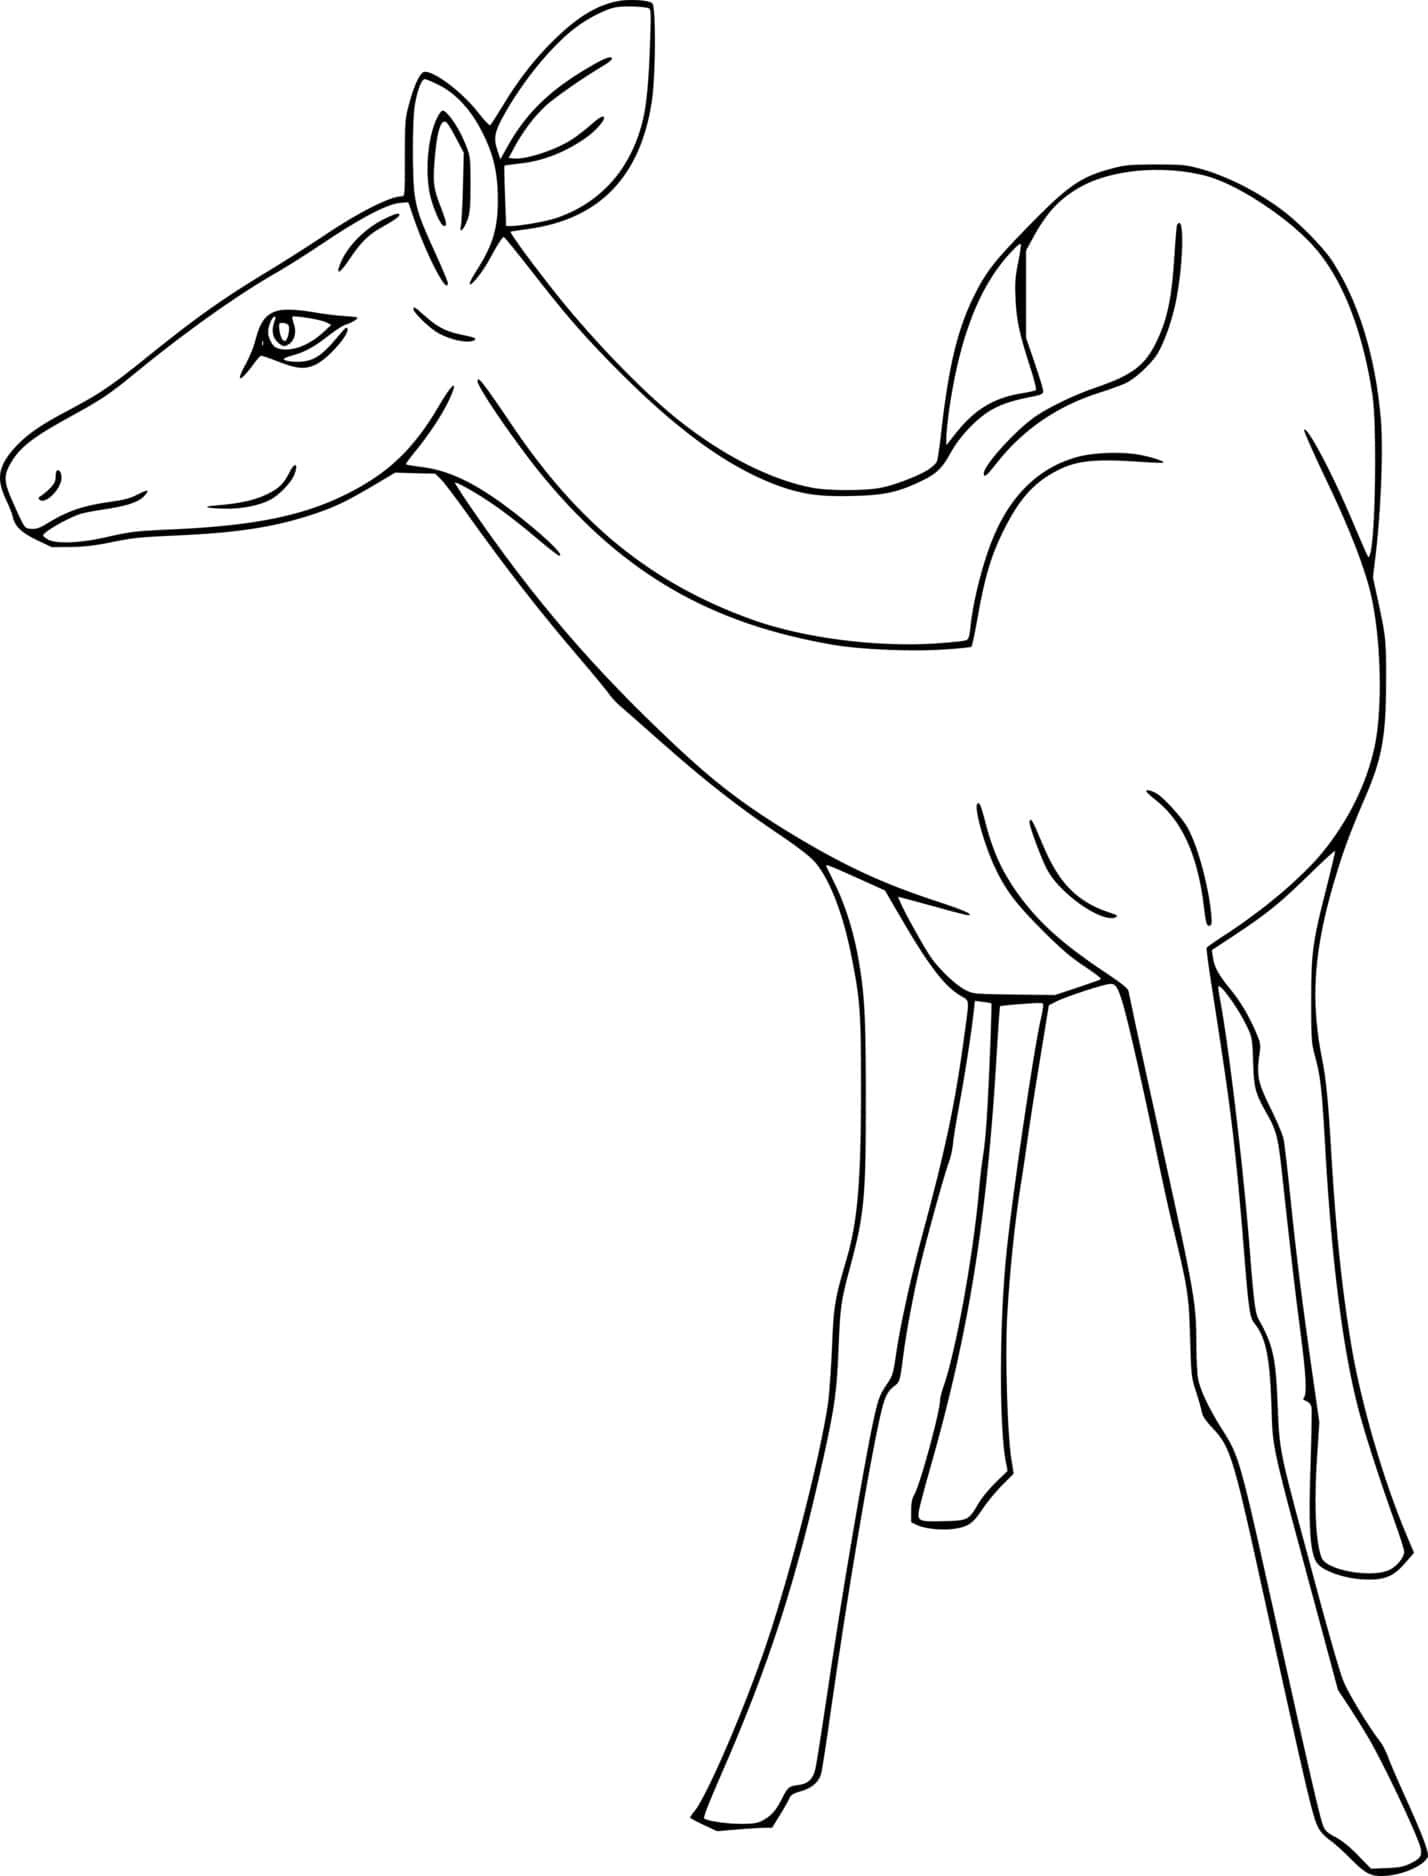 Easy Deer Coloring Page